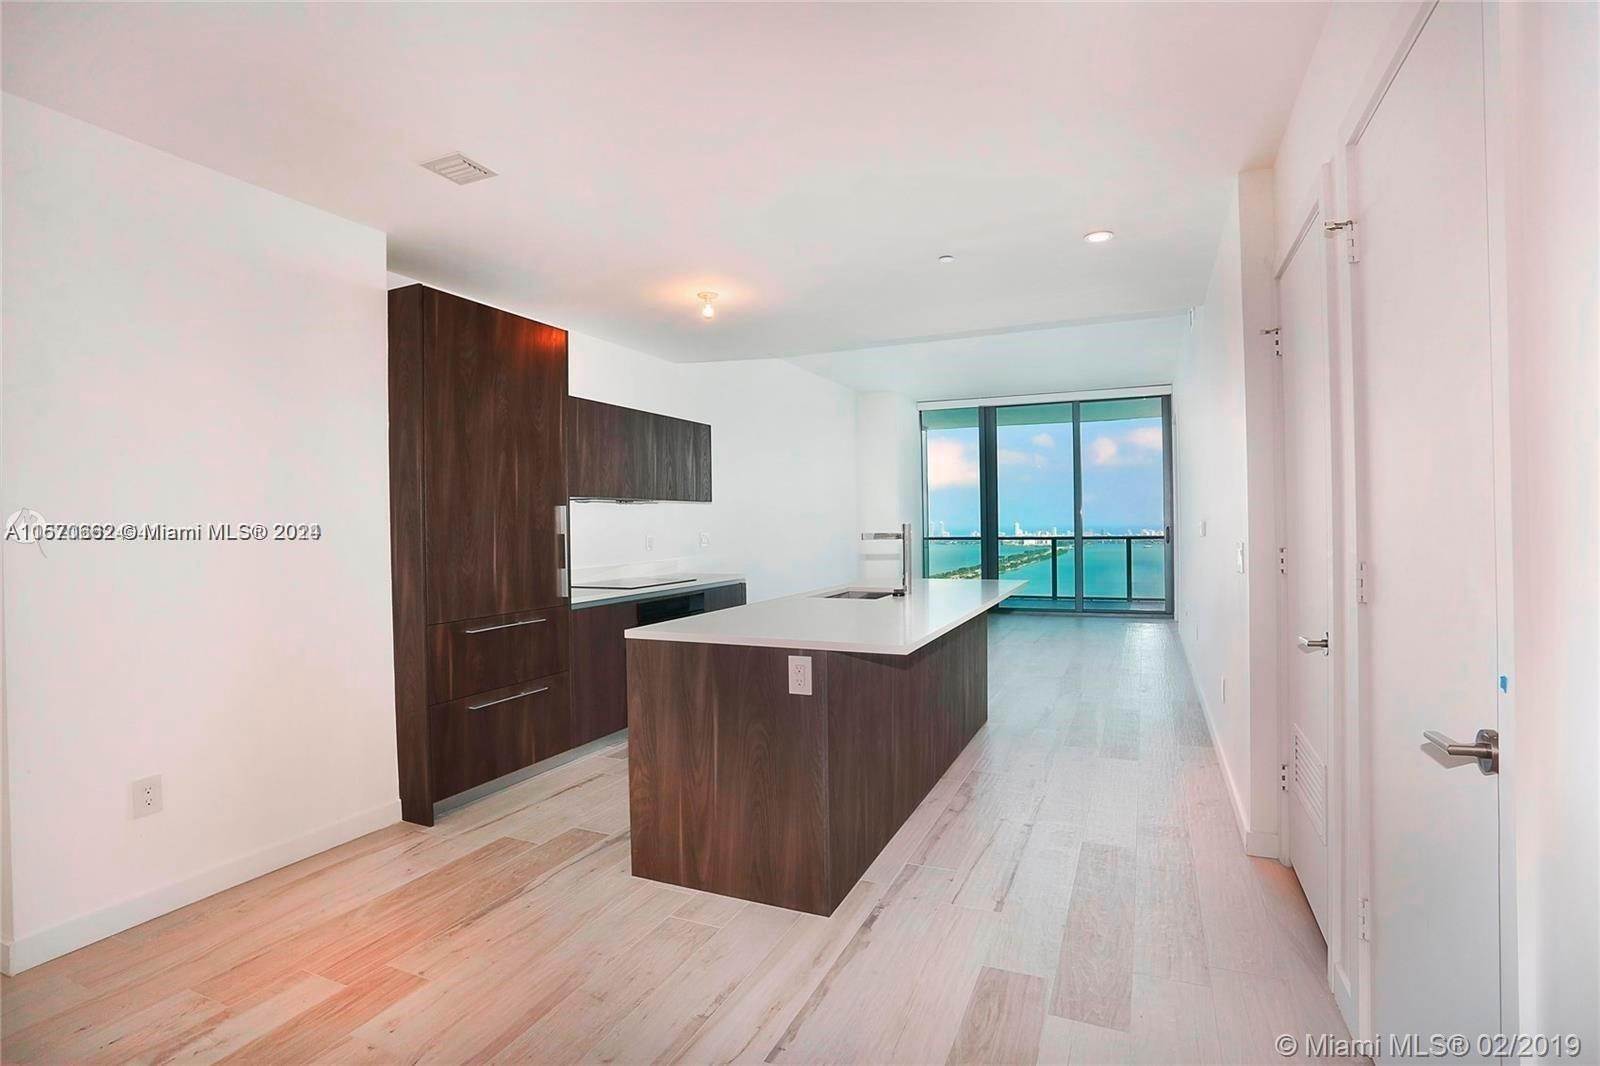 Condominium at Edgewater, Miami, FL 33137